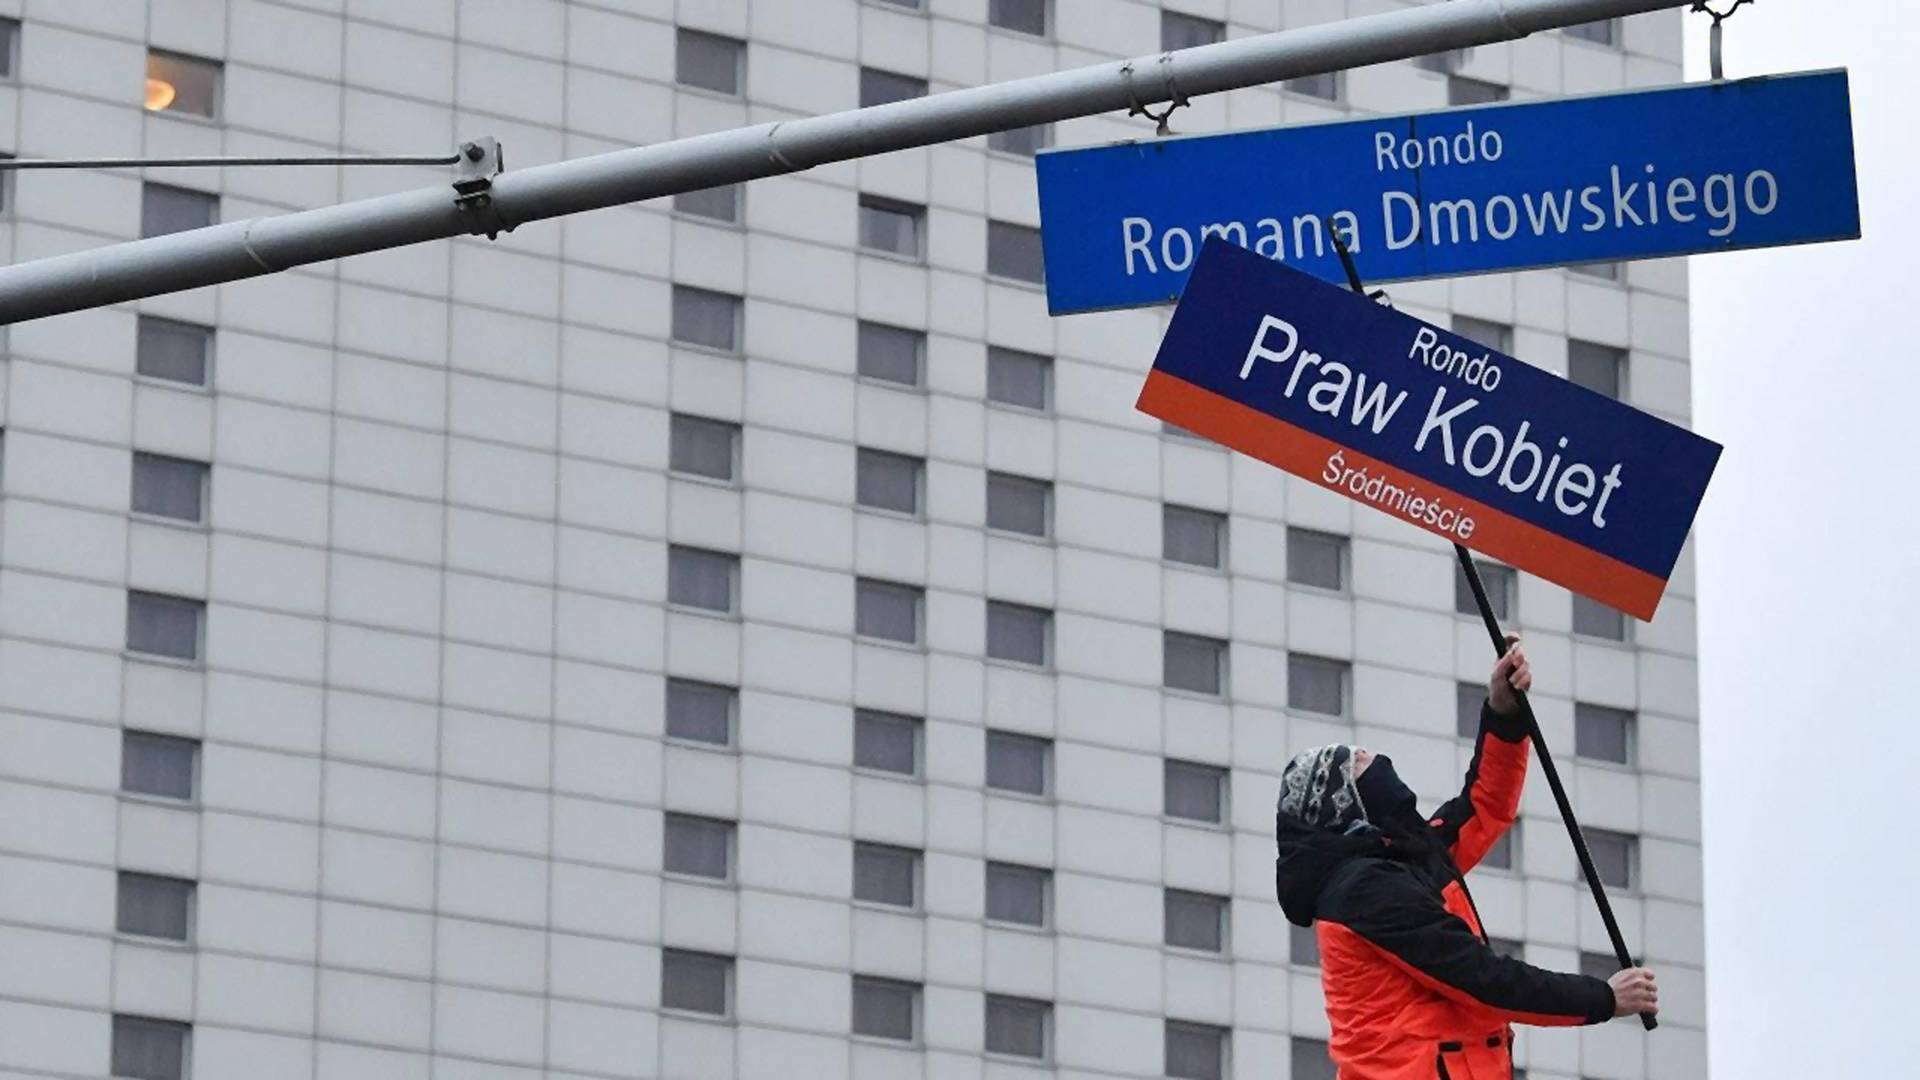 Rondo Dmowskiego zmieni nazwę na "Rondo Praw Kobiet". Zapadła decyzja